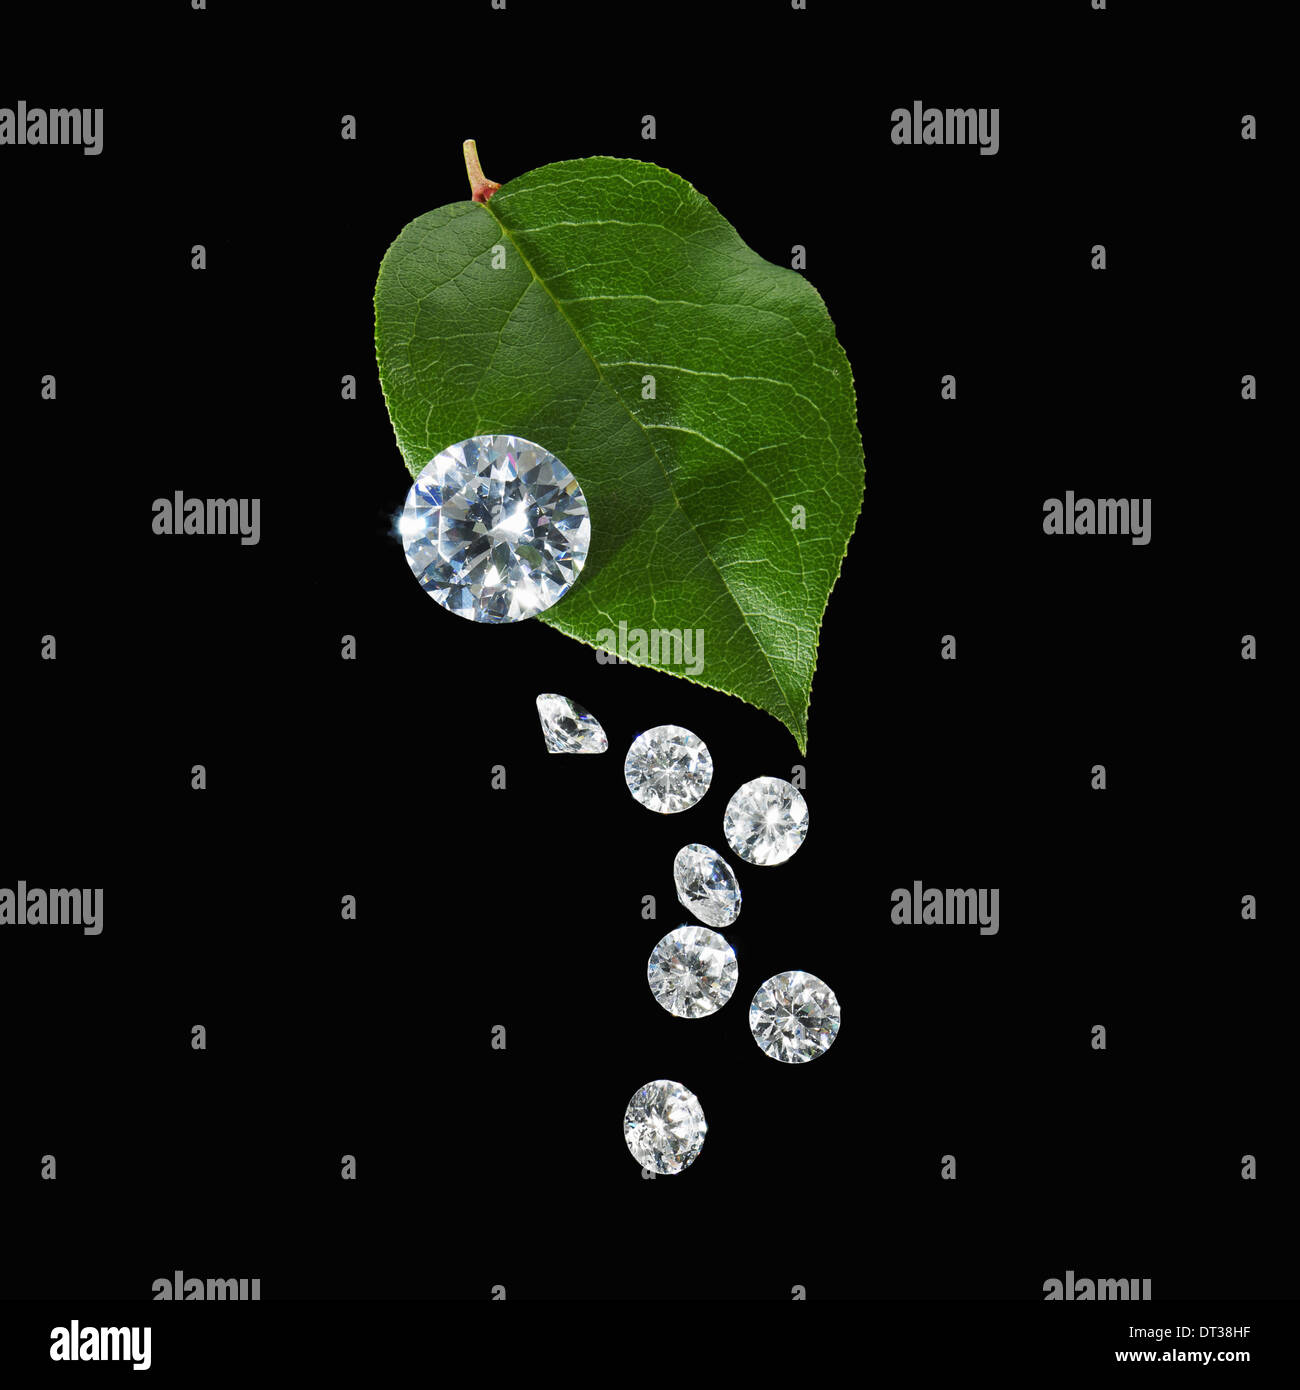 Ein grünes Blatt mit Vene Markierungen. Eine Gruppe von kleinen farbloses Glas Perlen, Edelstein geschnitten mit spiegelnden Oberflächen. Stockfoto